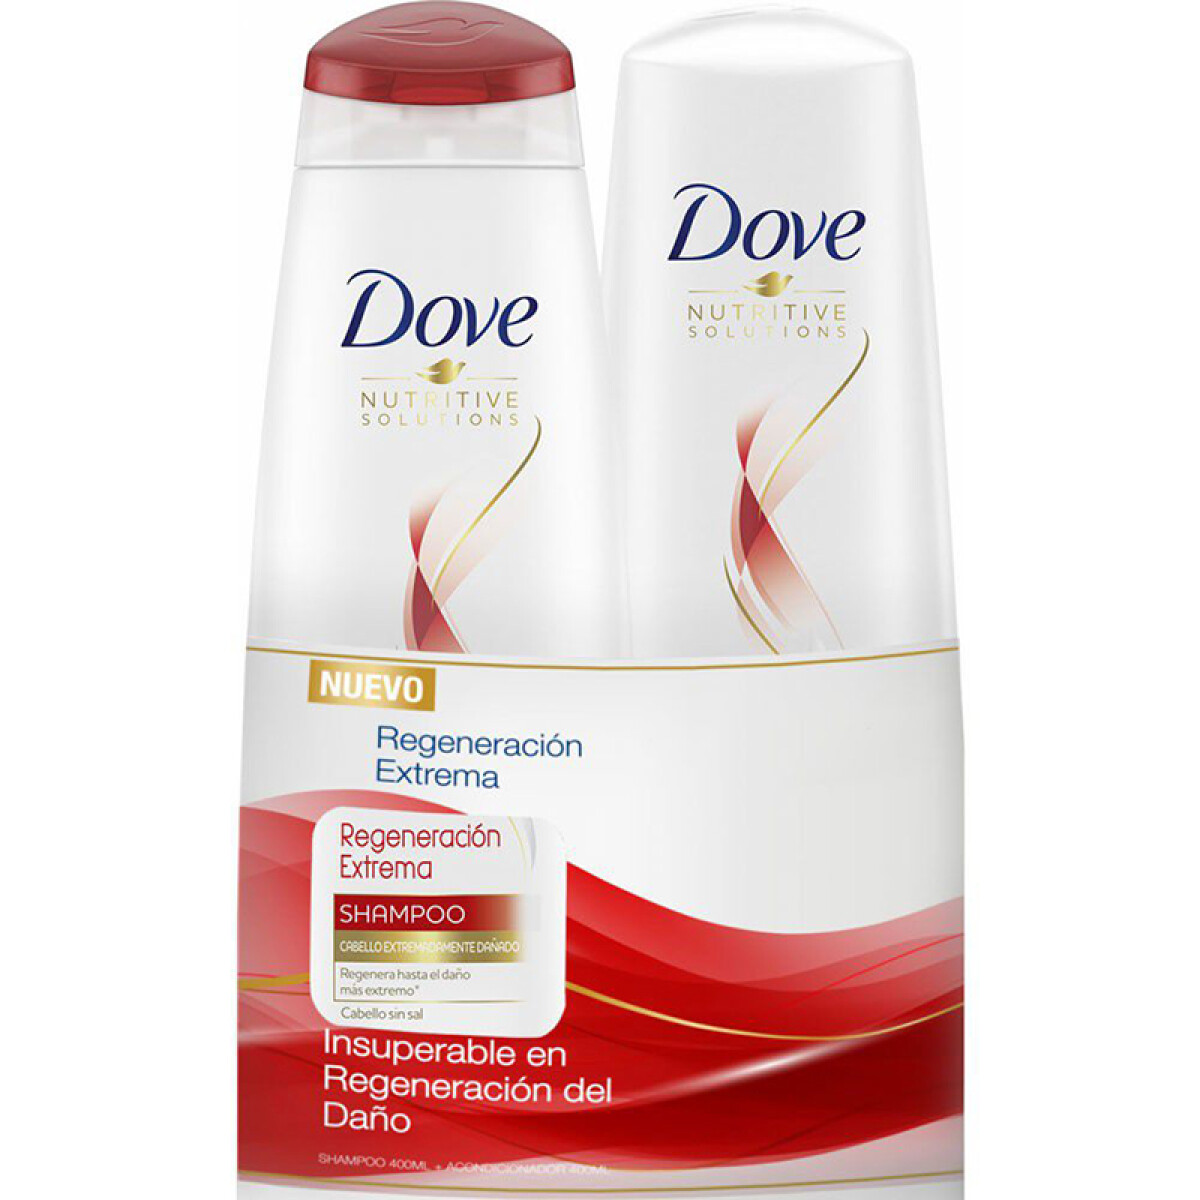 Dove shampoo + aco. 400ml + 200ml - Regeneracion extrema